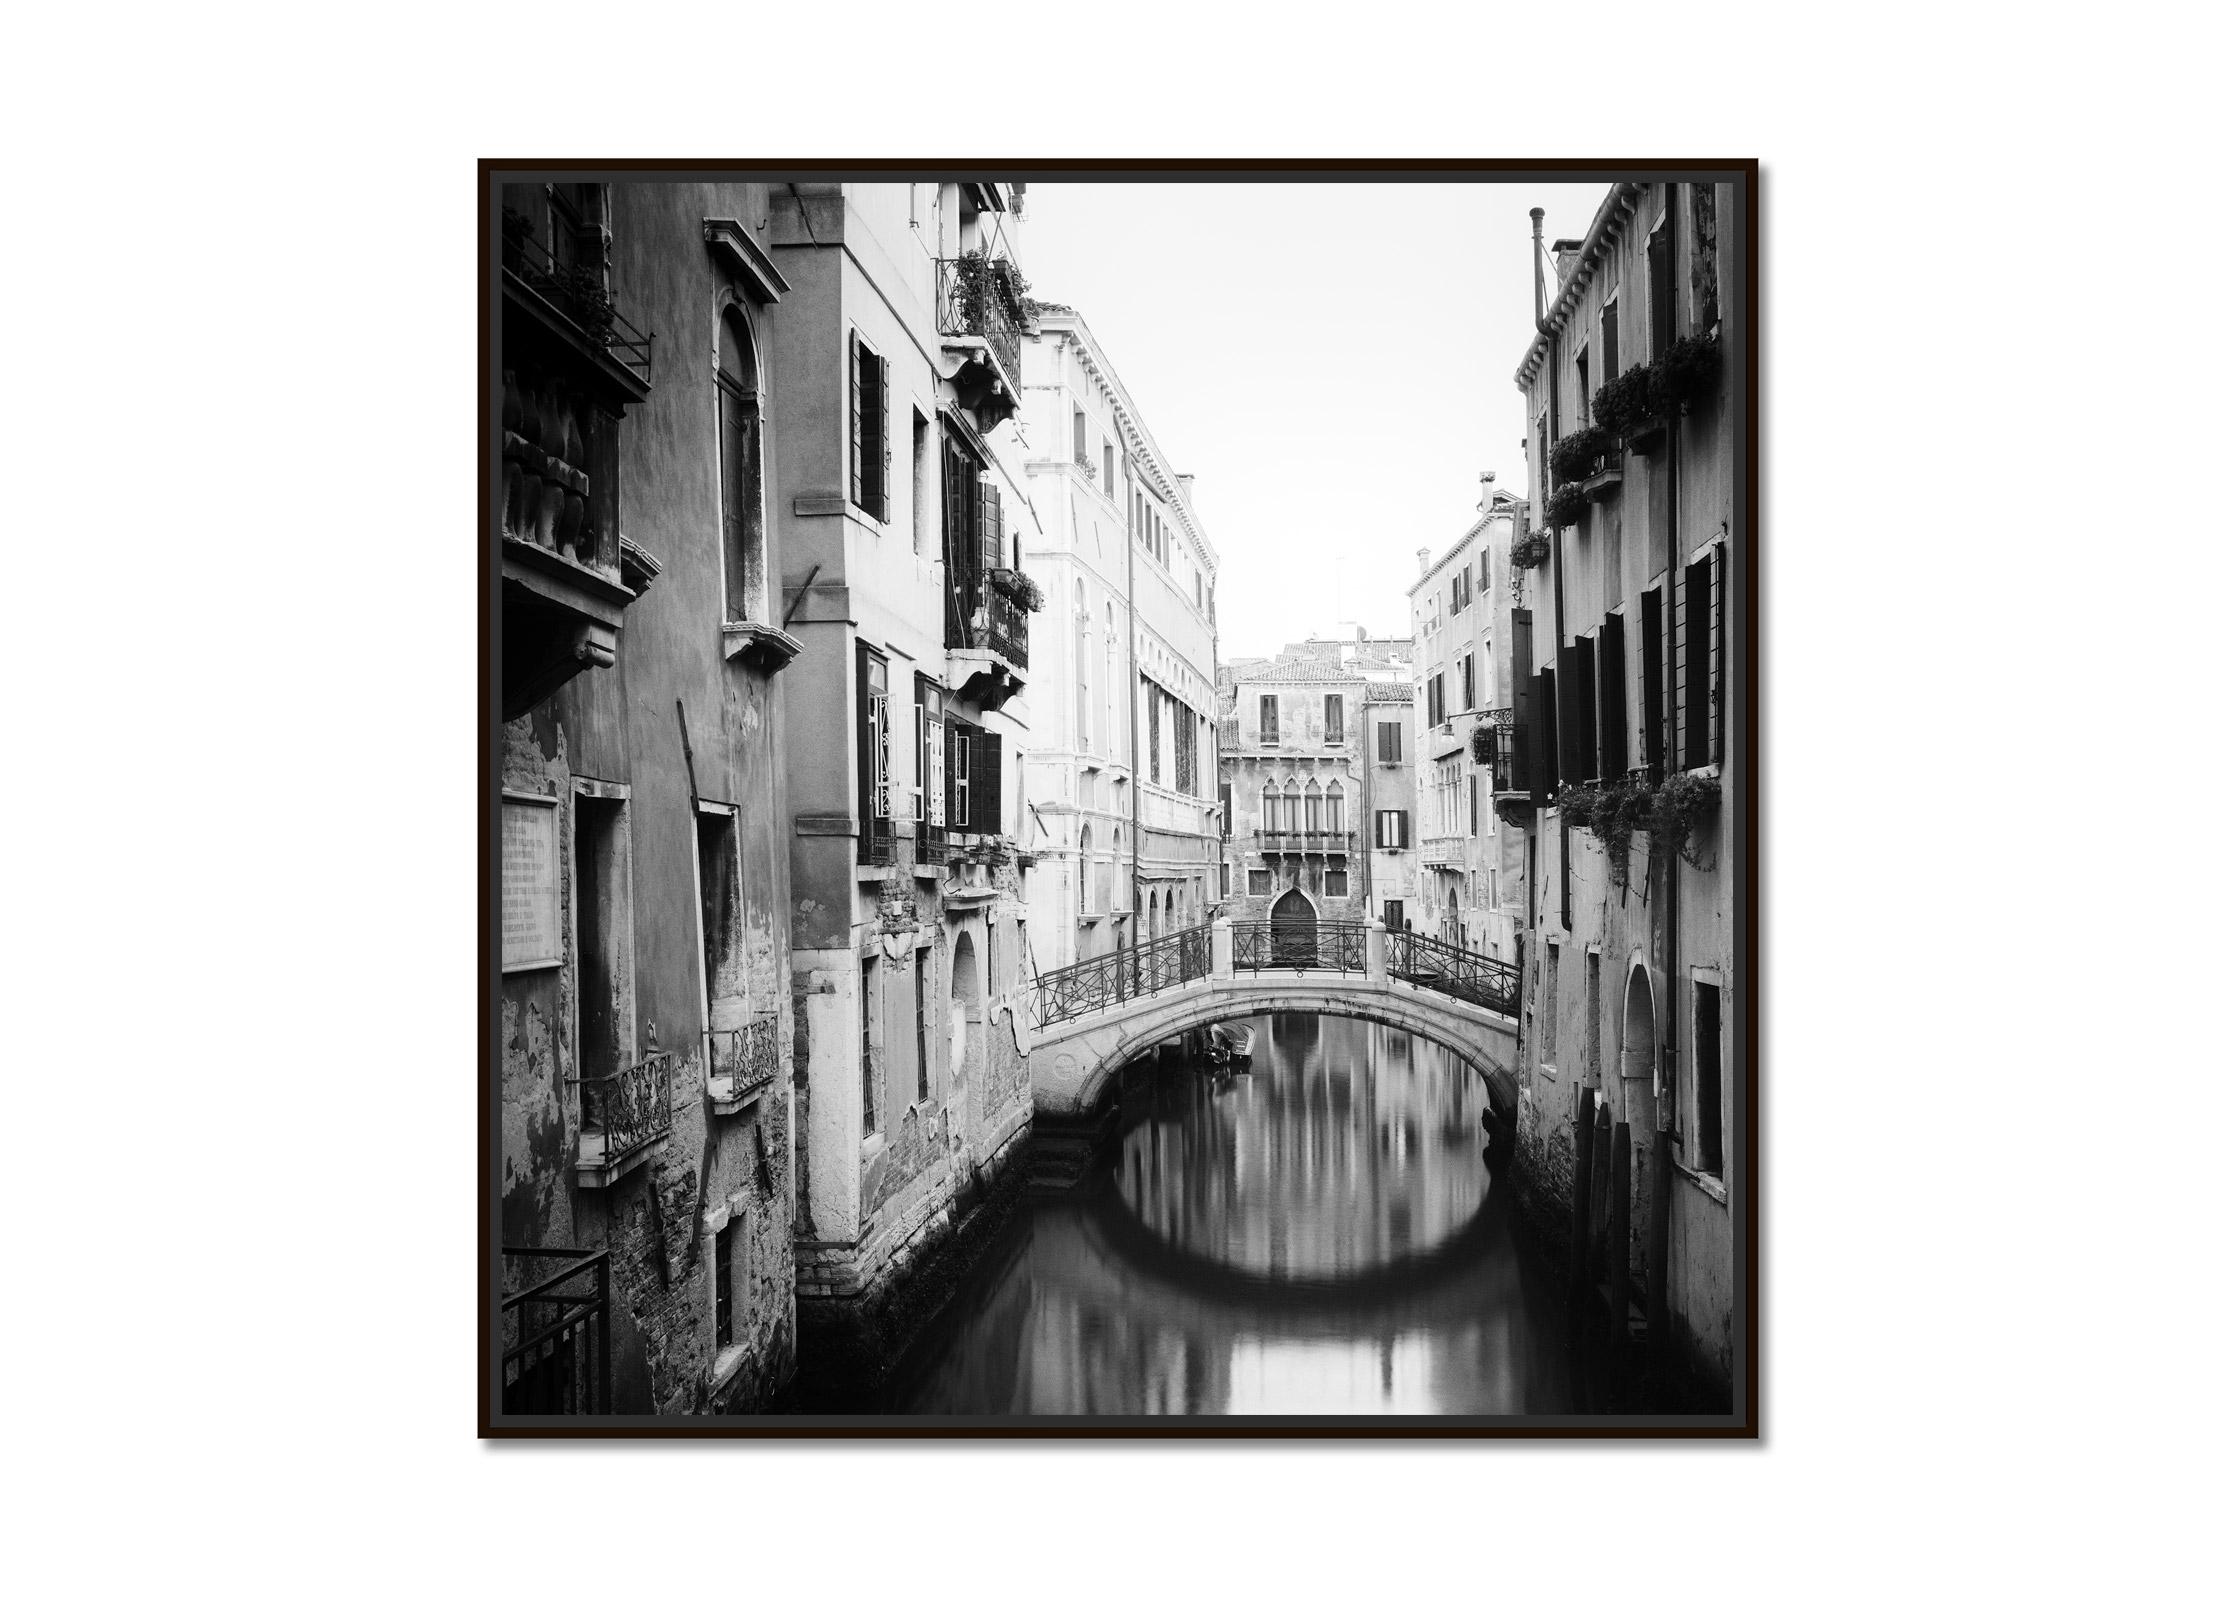 The Bridges of Venice, Italy, noir et blanc, fine art cityscape photography - Photograph de Gerald Berghammer